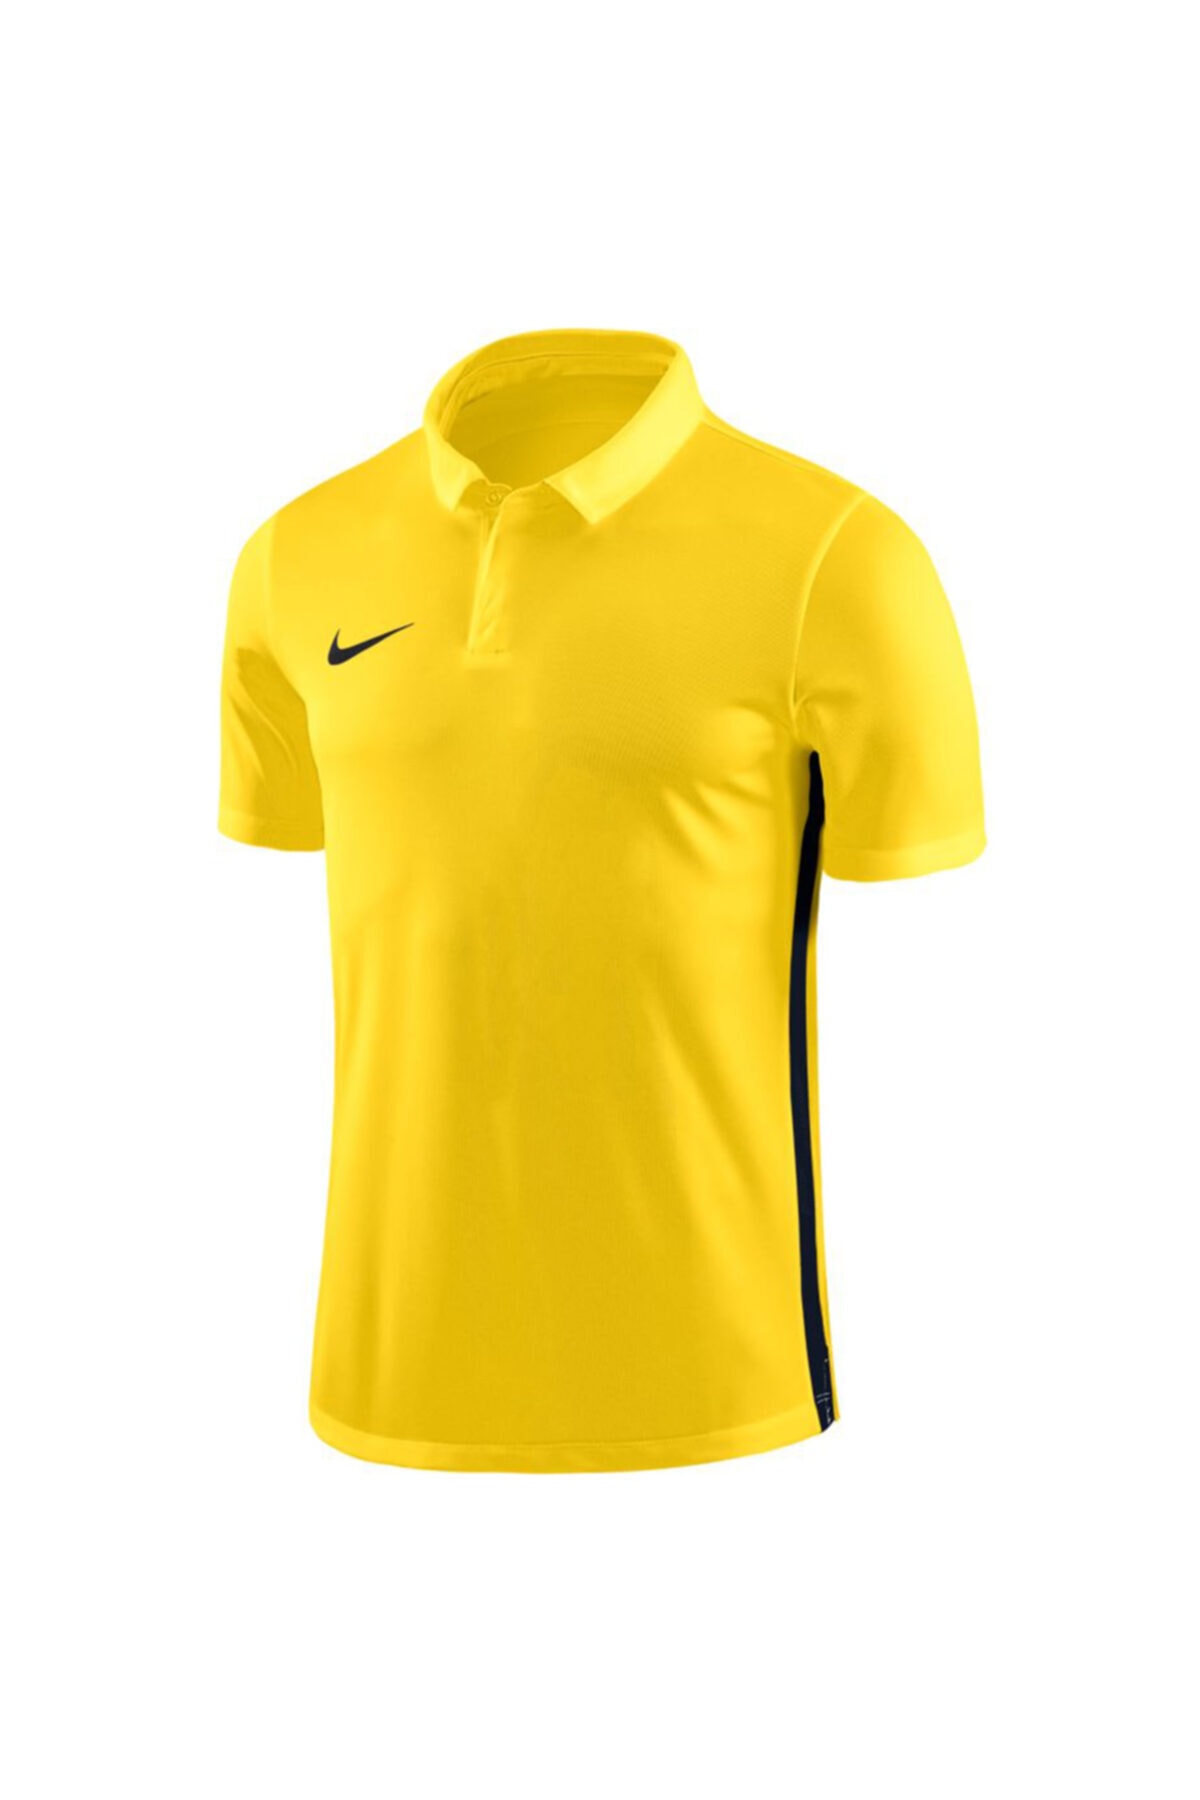 Nike Dry Academy 18 Ss 899984-719 Sarı Polo T-shirt